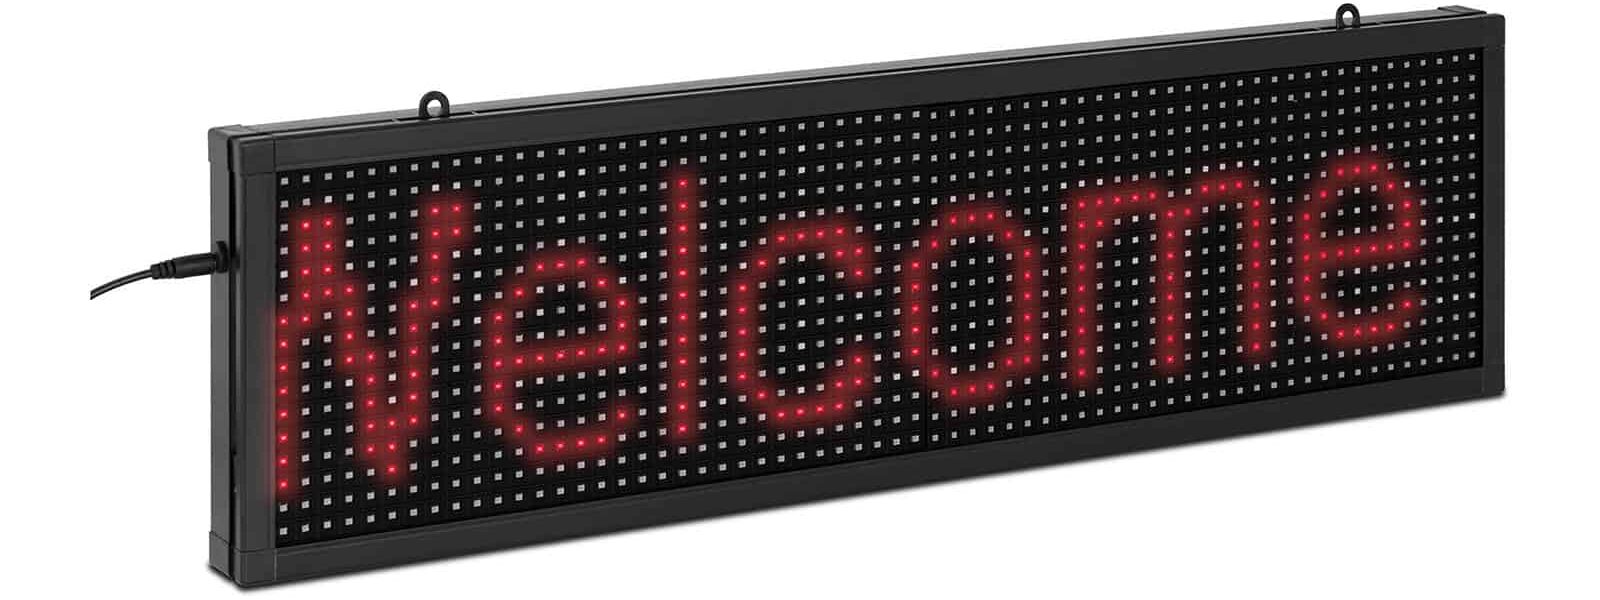 Occasion Panneau publicitaire LED – 64 x 16 LED rouge – 67 x 19 cm – Programmable via iOS/Android